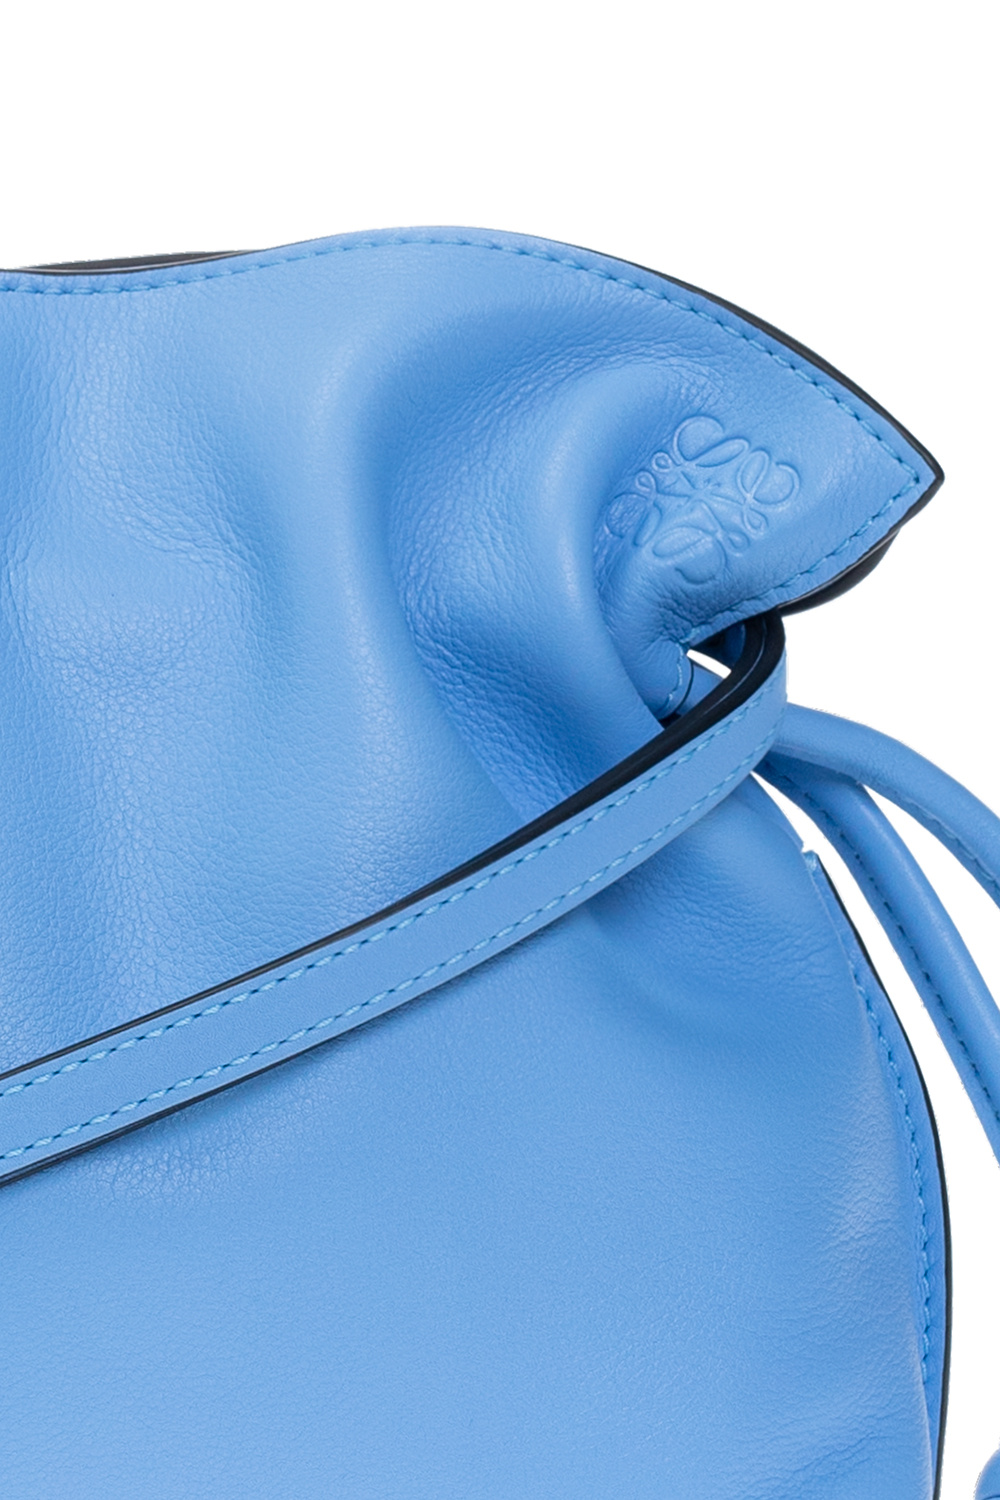 loewe GLASSES ‘Flamenco Clutch Mini’ shoulder bag